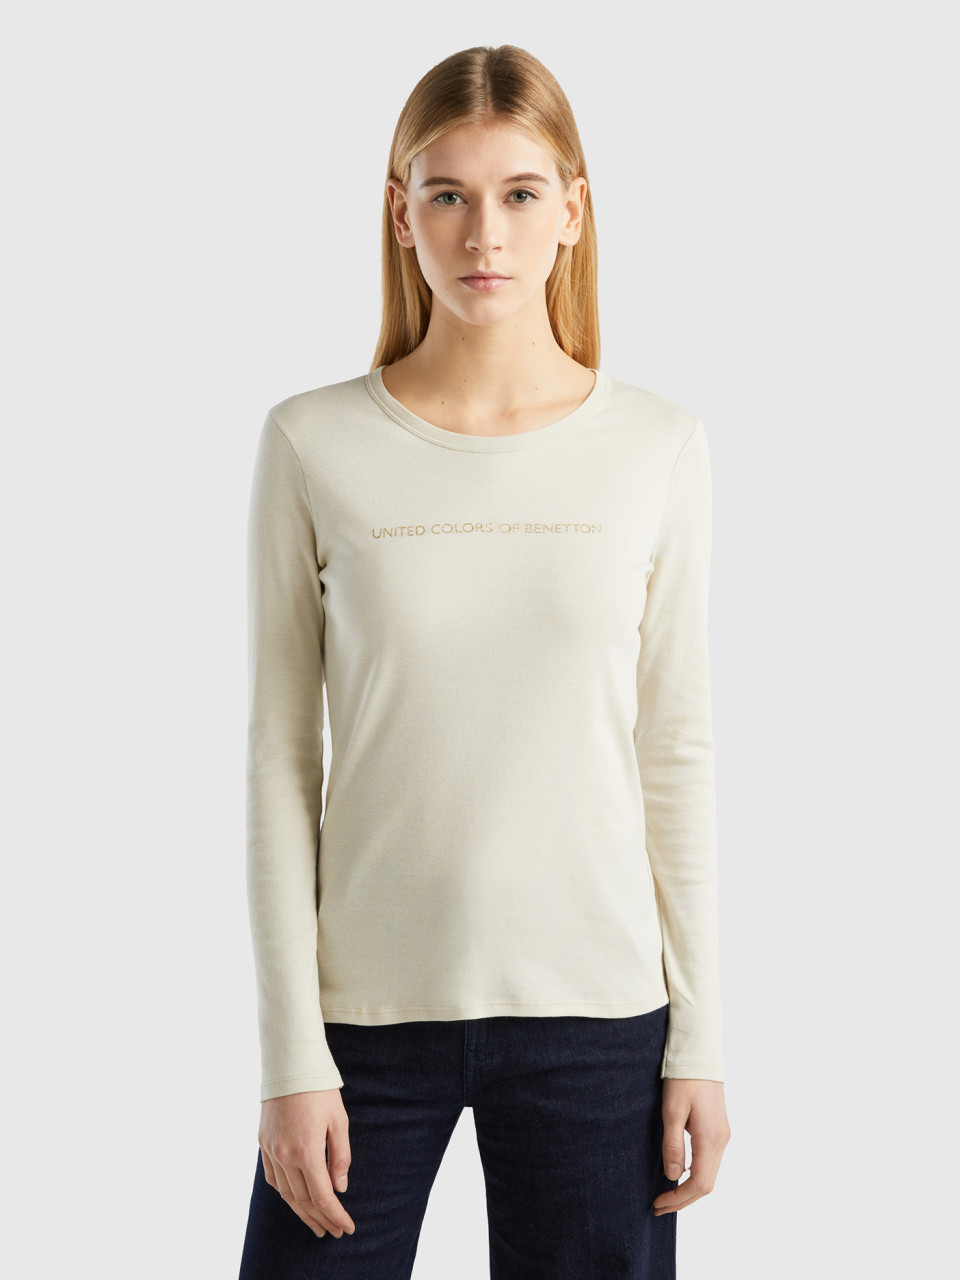 Benetton, Beige Long Sleeve T-shirt In 100% Cotton, Beige, Women